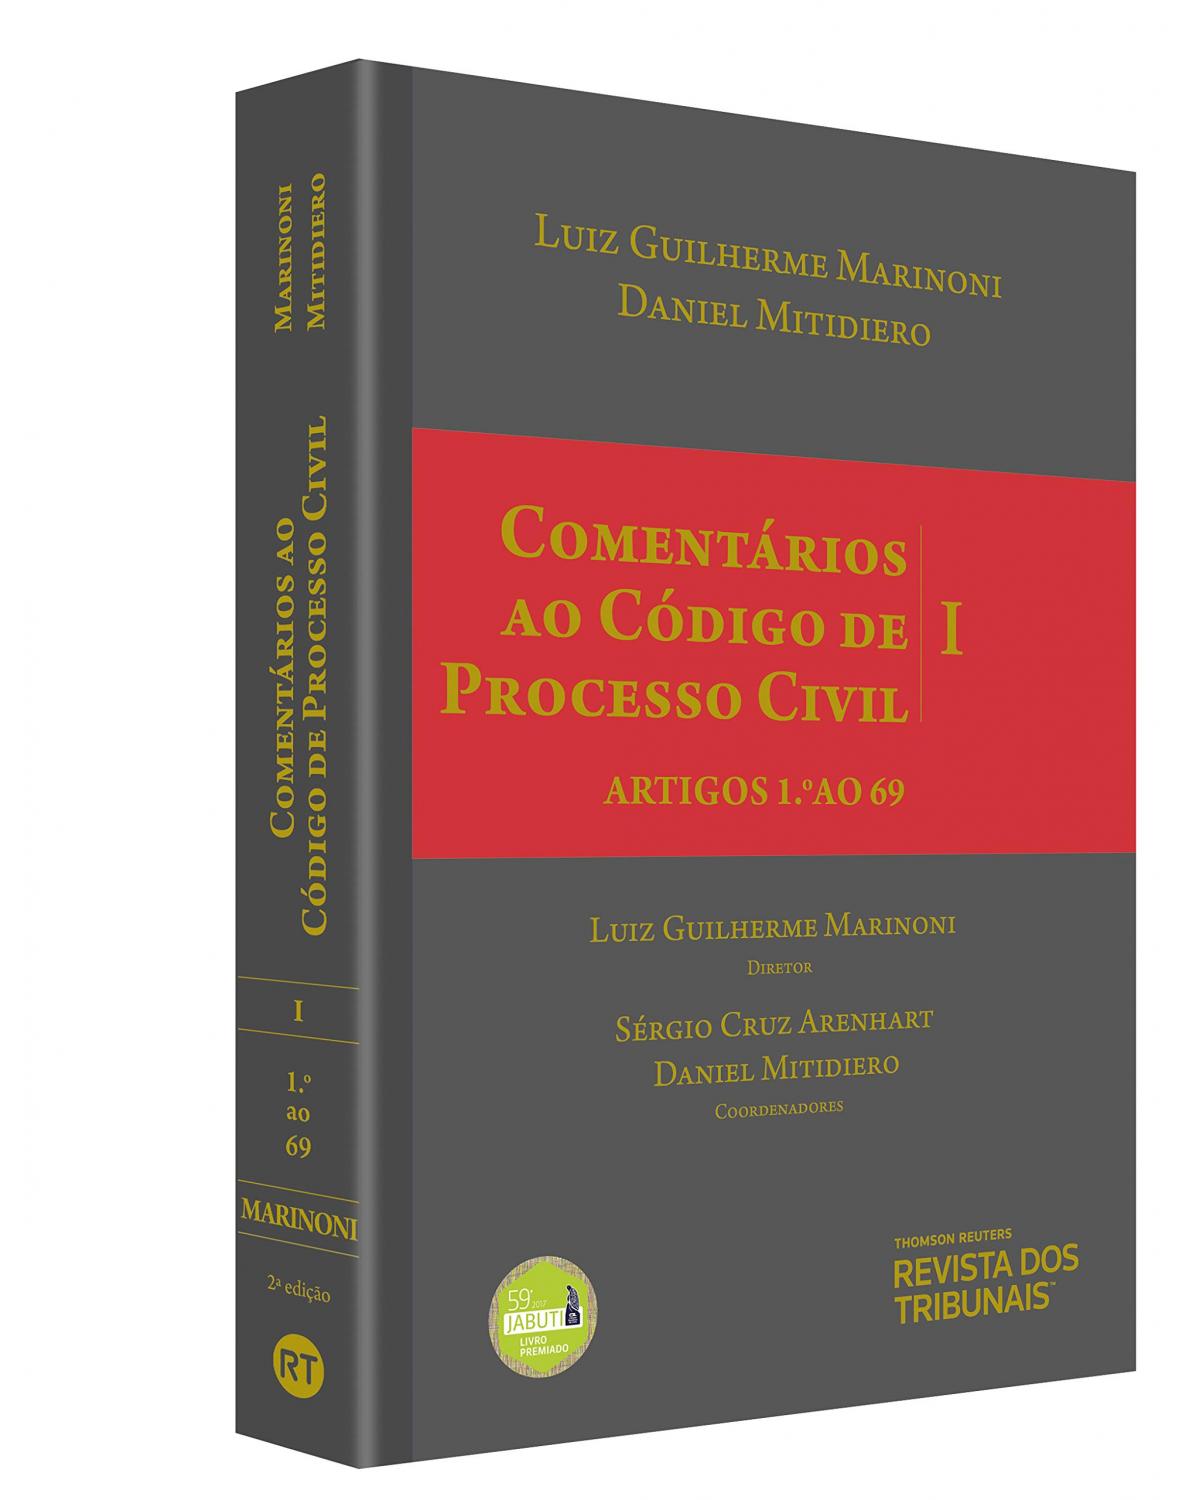 Comentários ao Código de Processo Civil V. I - Artigos 1 ao 69